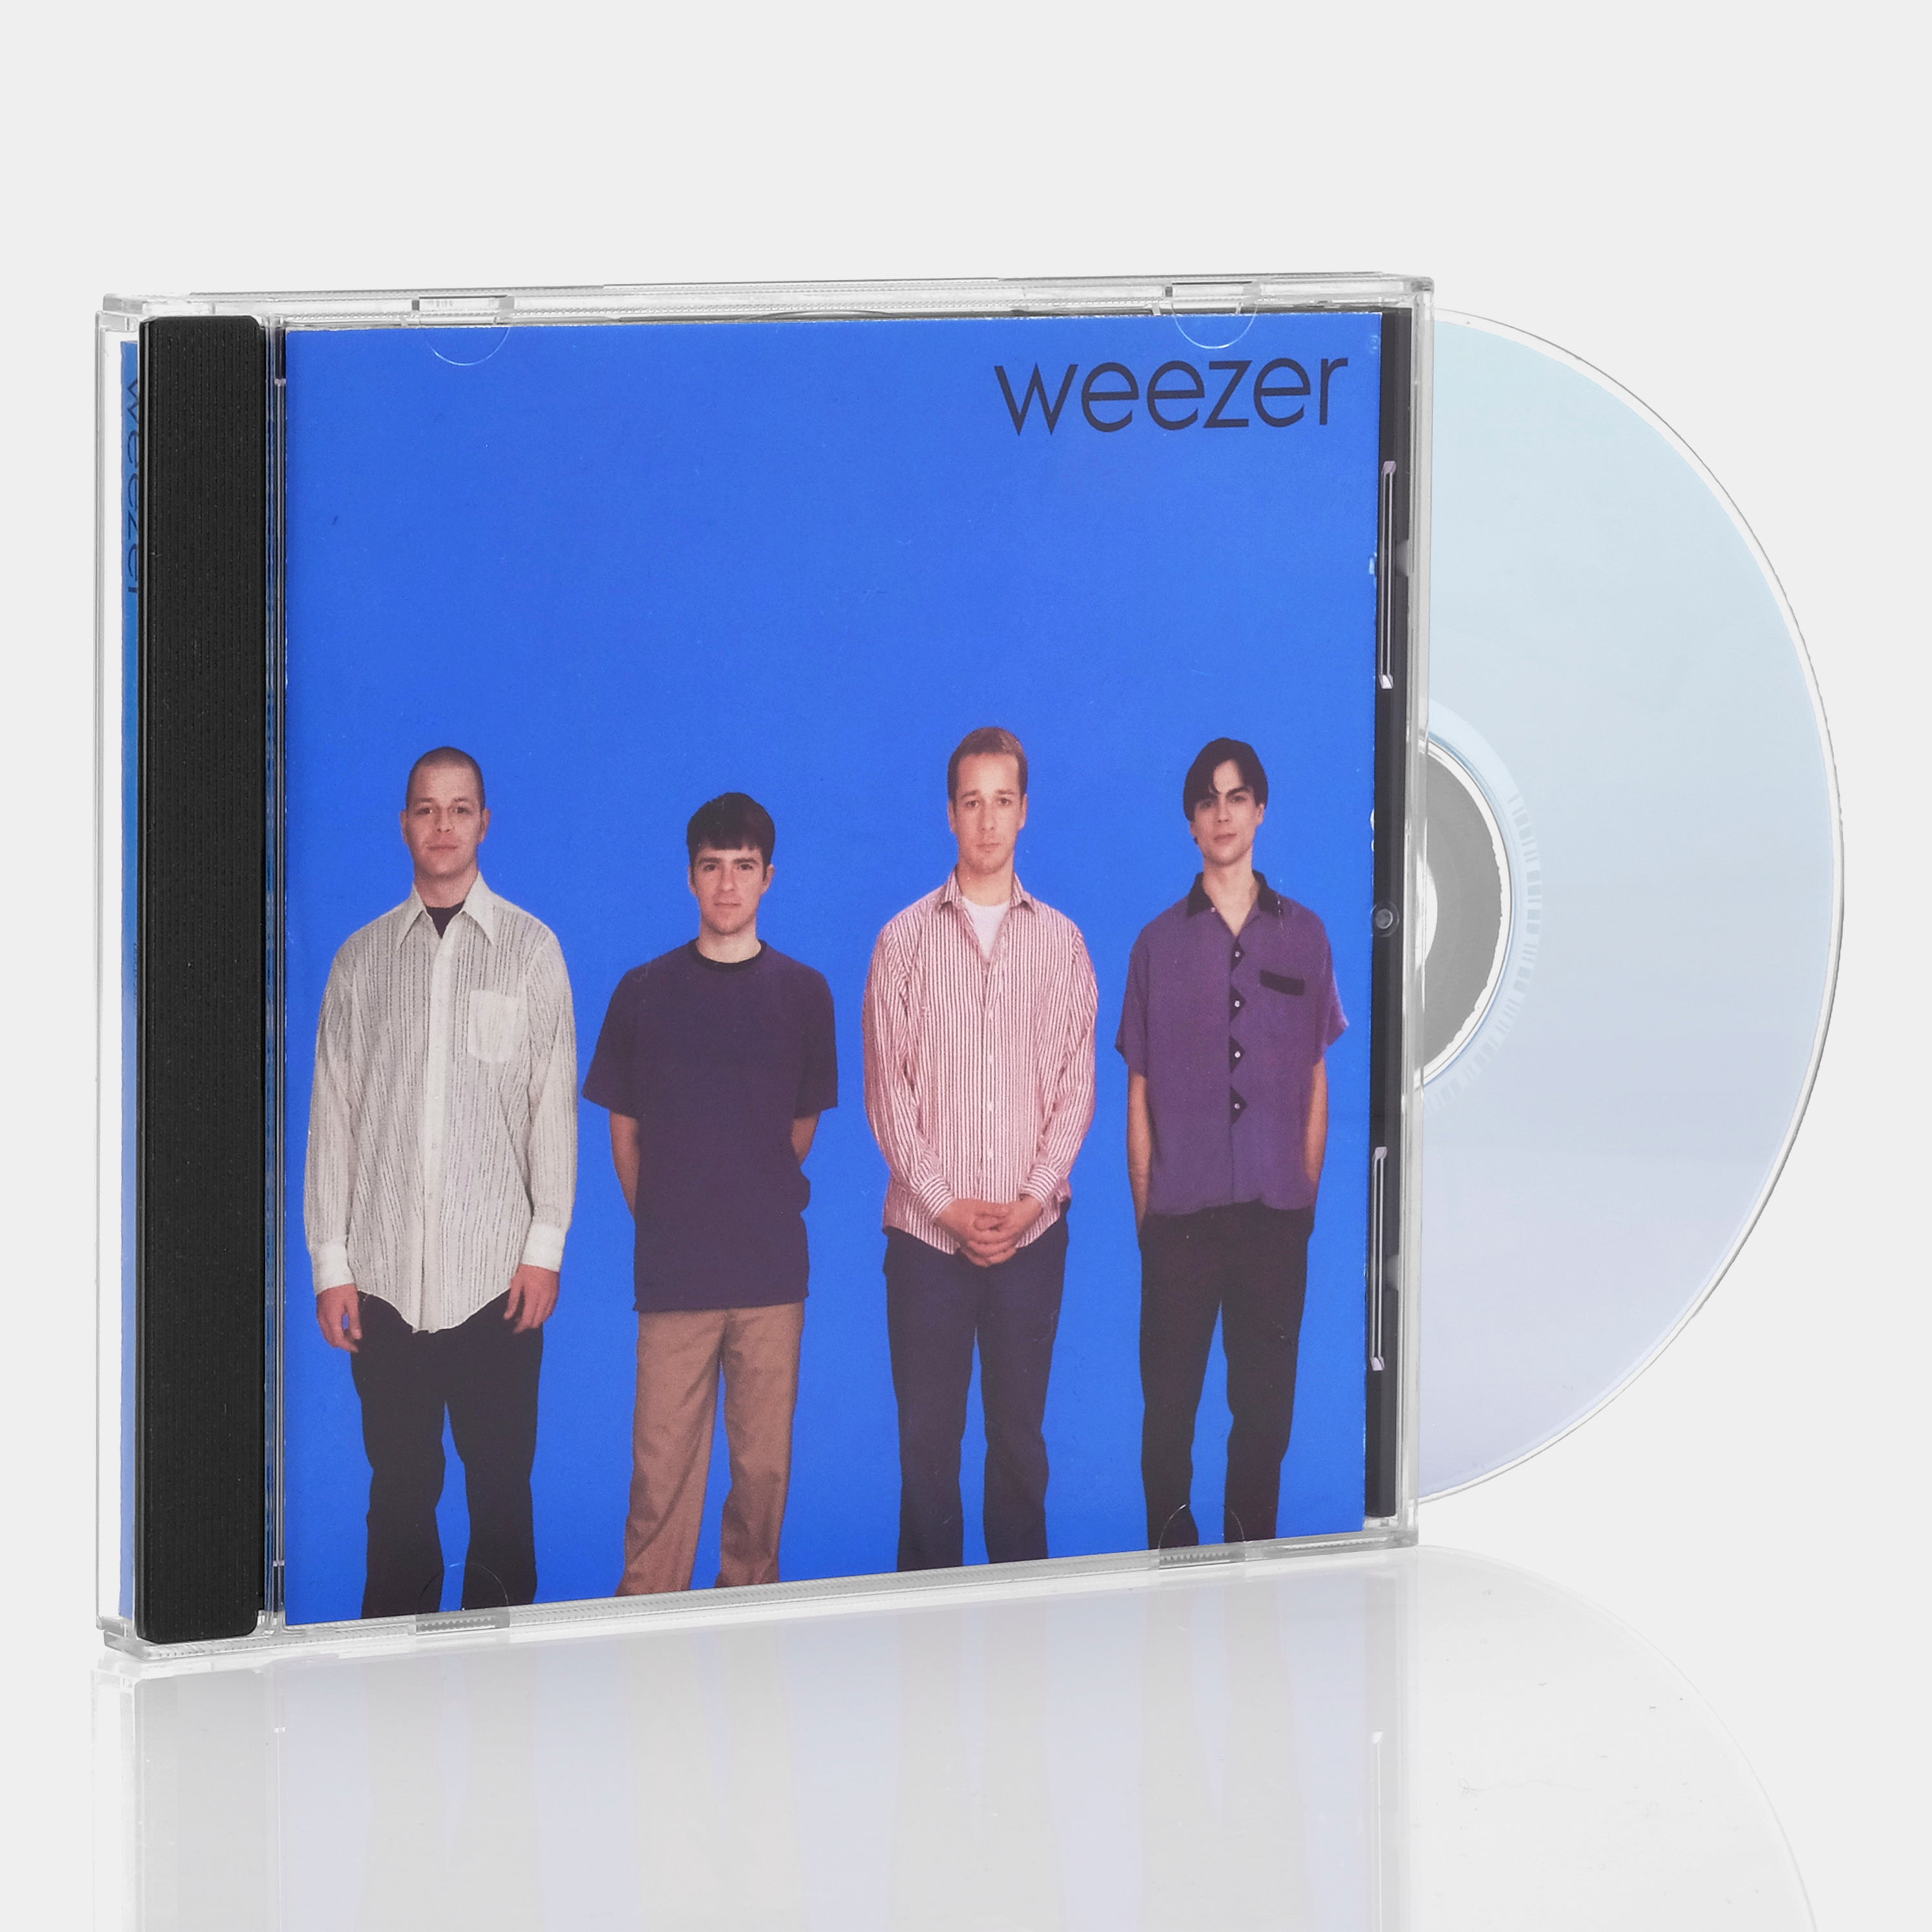 Weezer - Weezer (Blue Album) CD